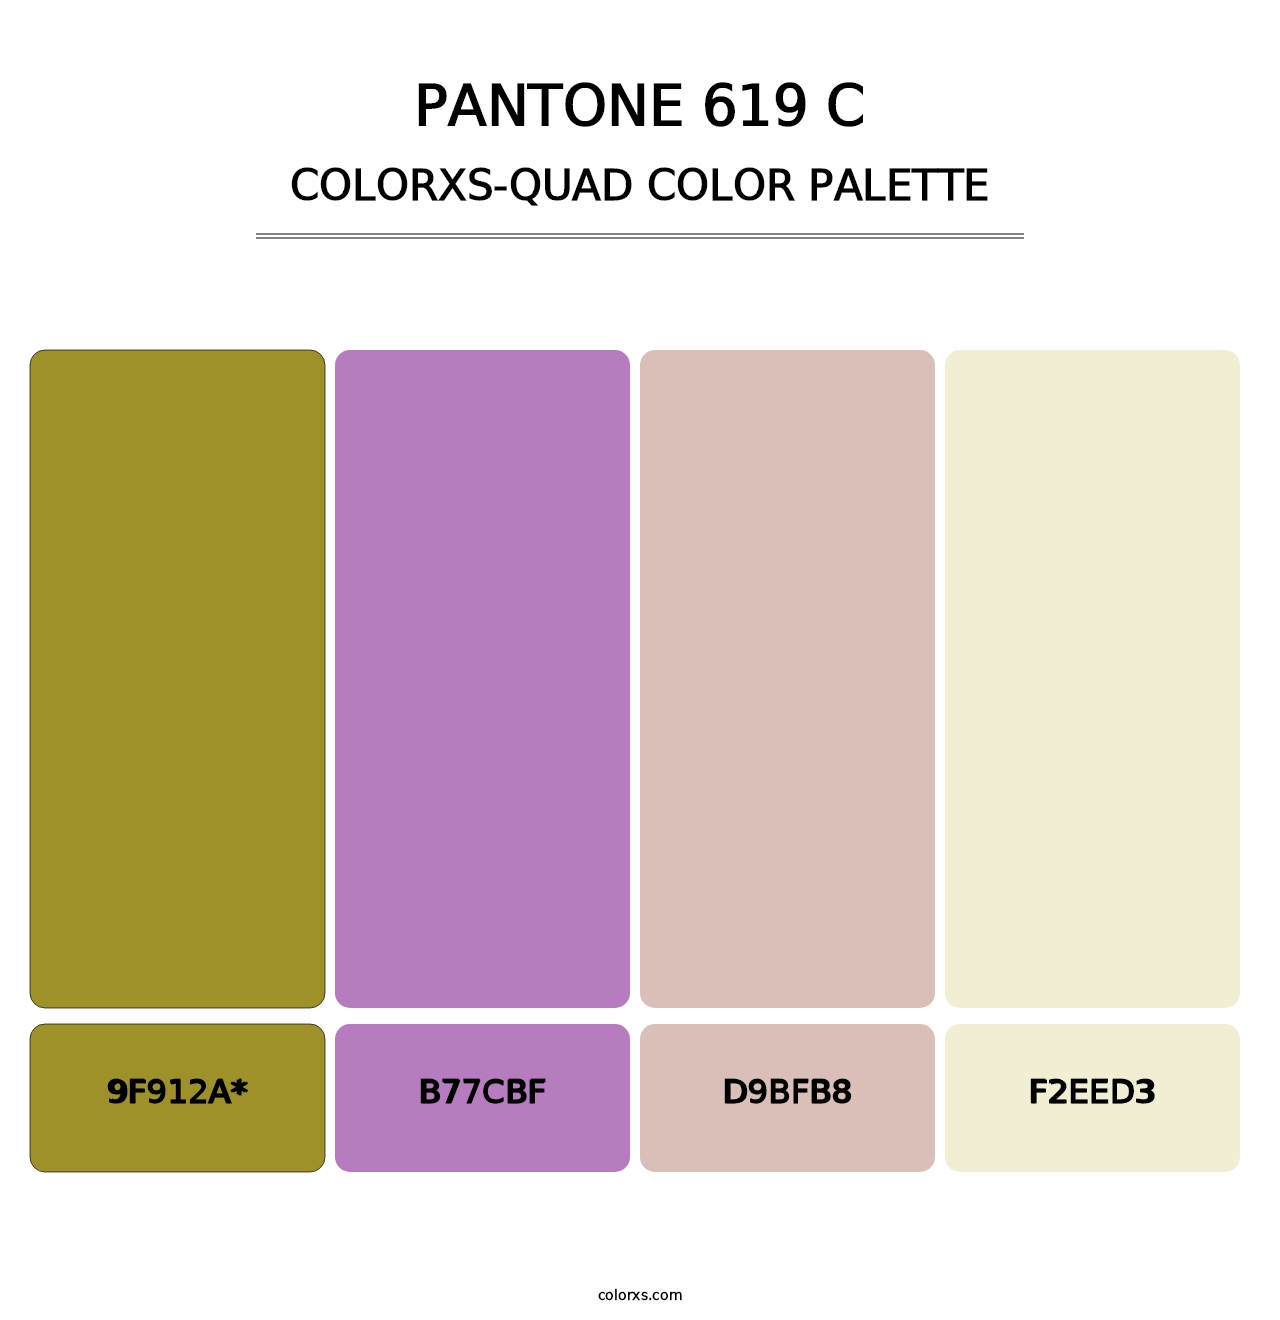 PANTONE 619 C - Colorxs Quad Palette